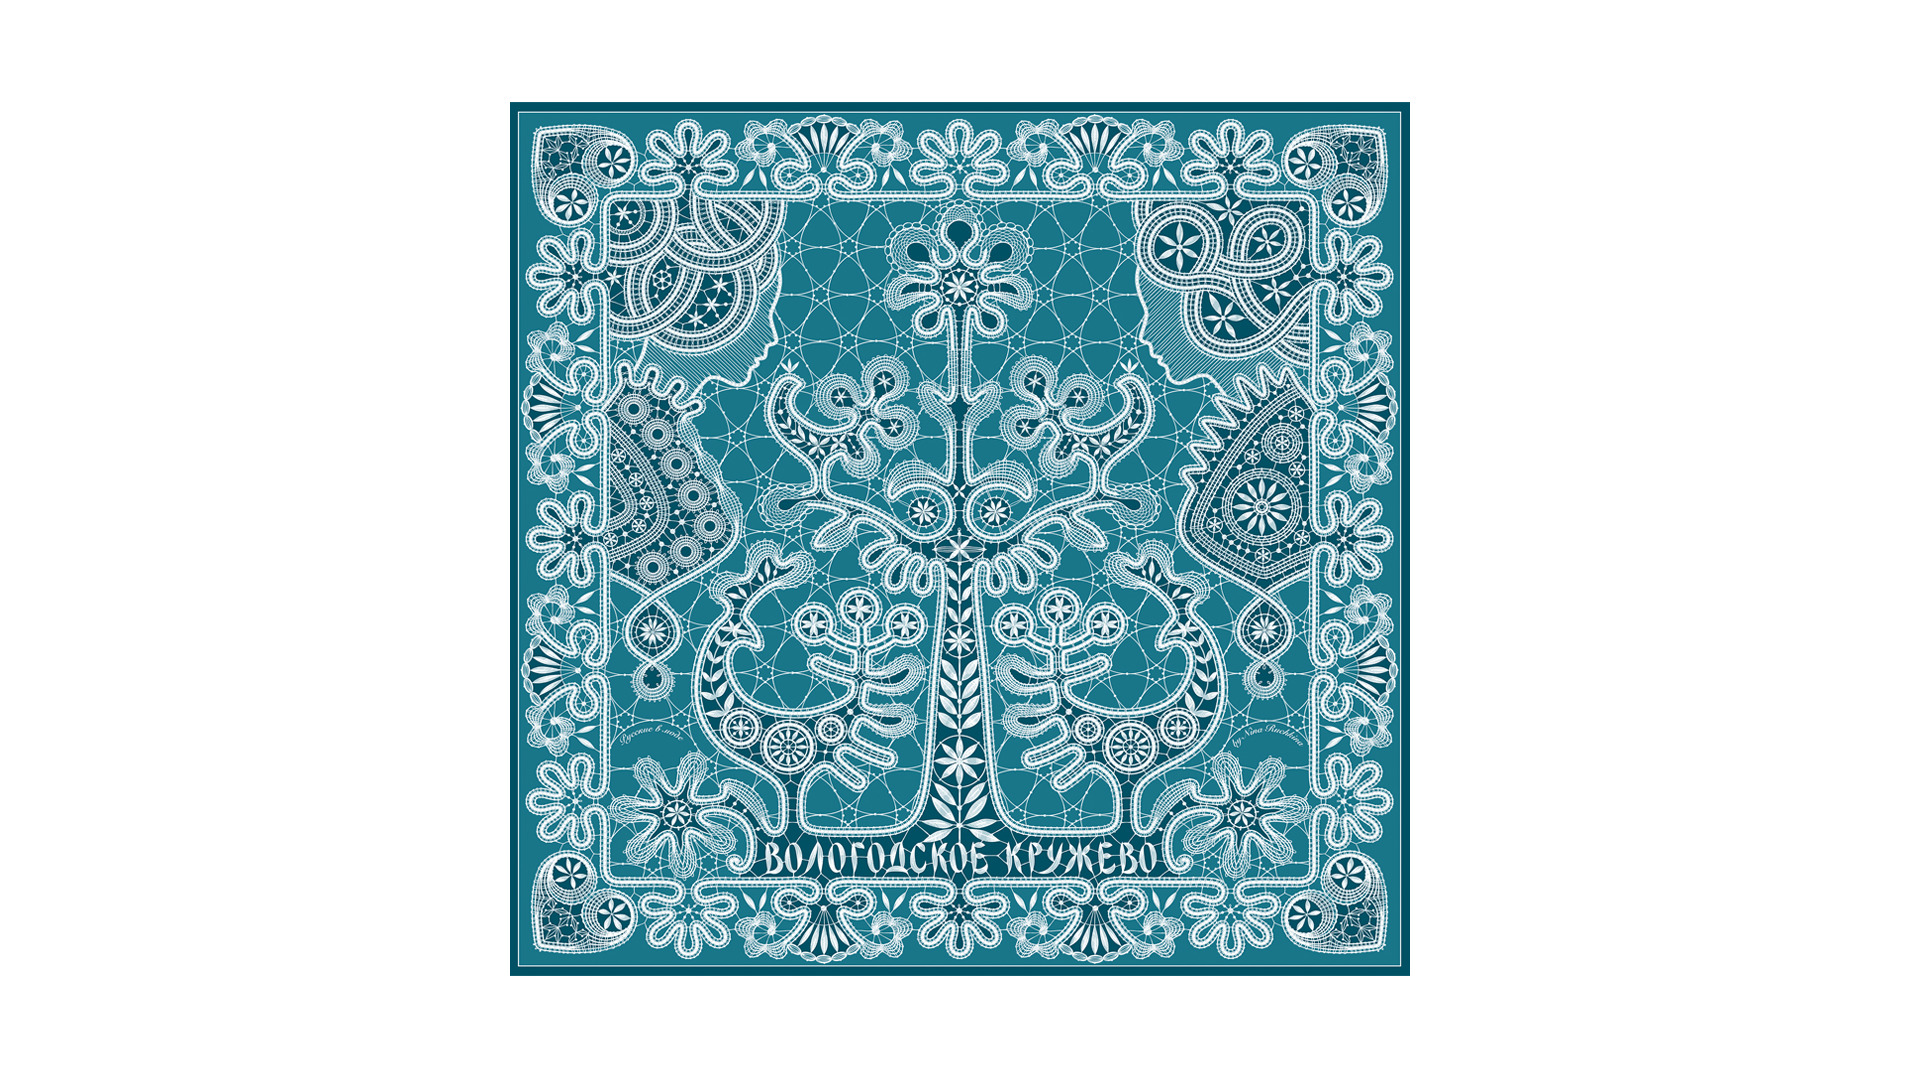 Платок сувенирный Русские в моде Вологодское кружево 90х90 см, шелк, вискоза, ручная подшивка